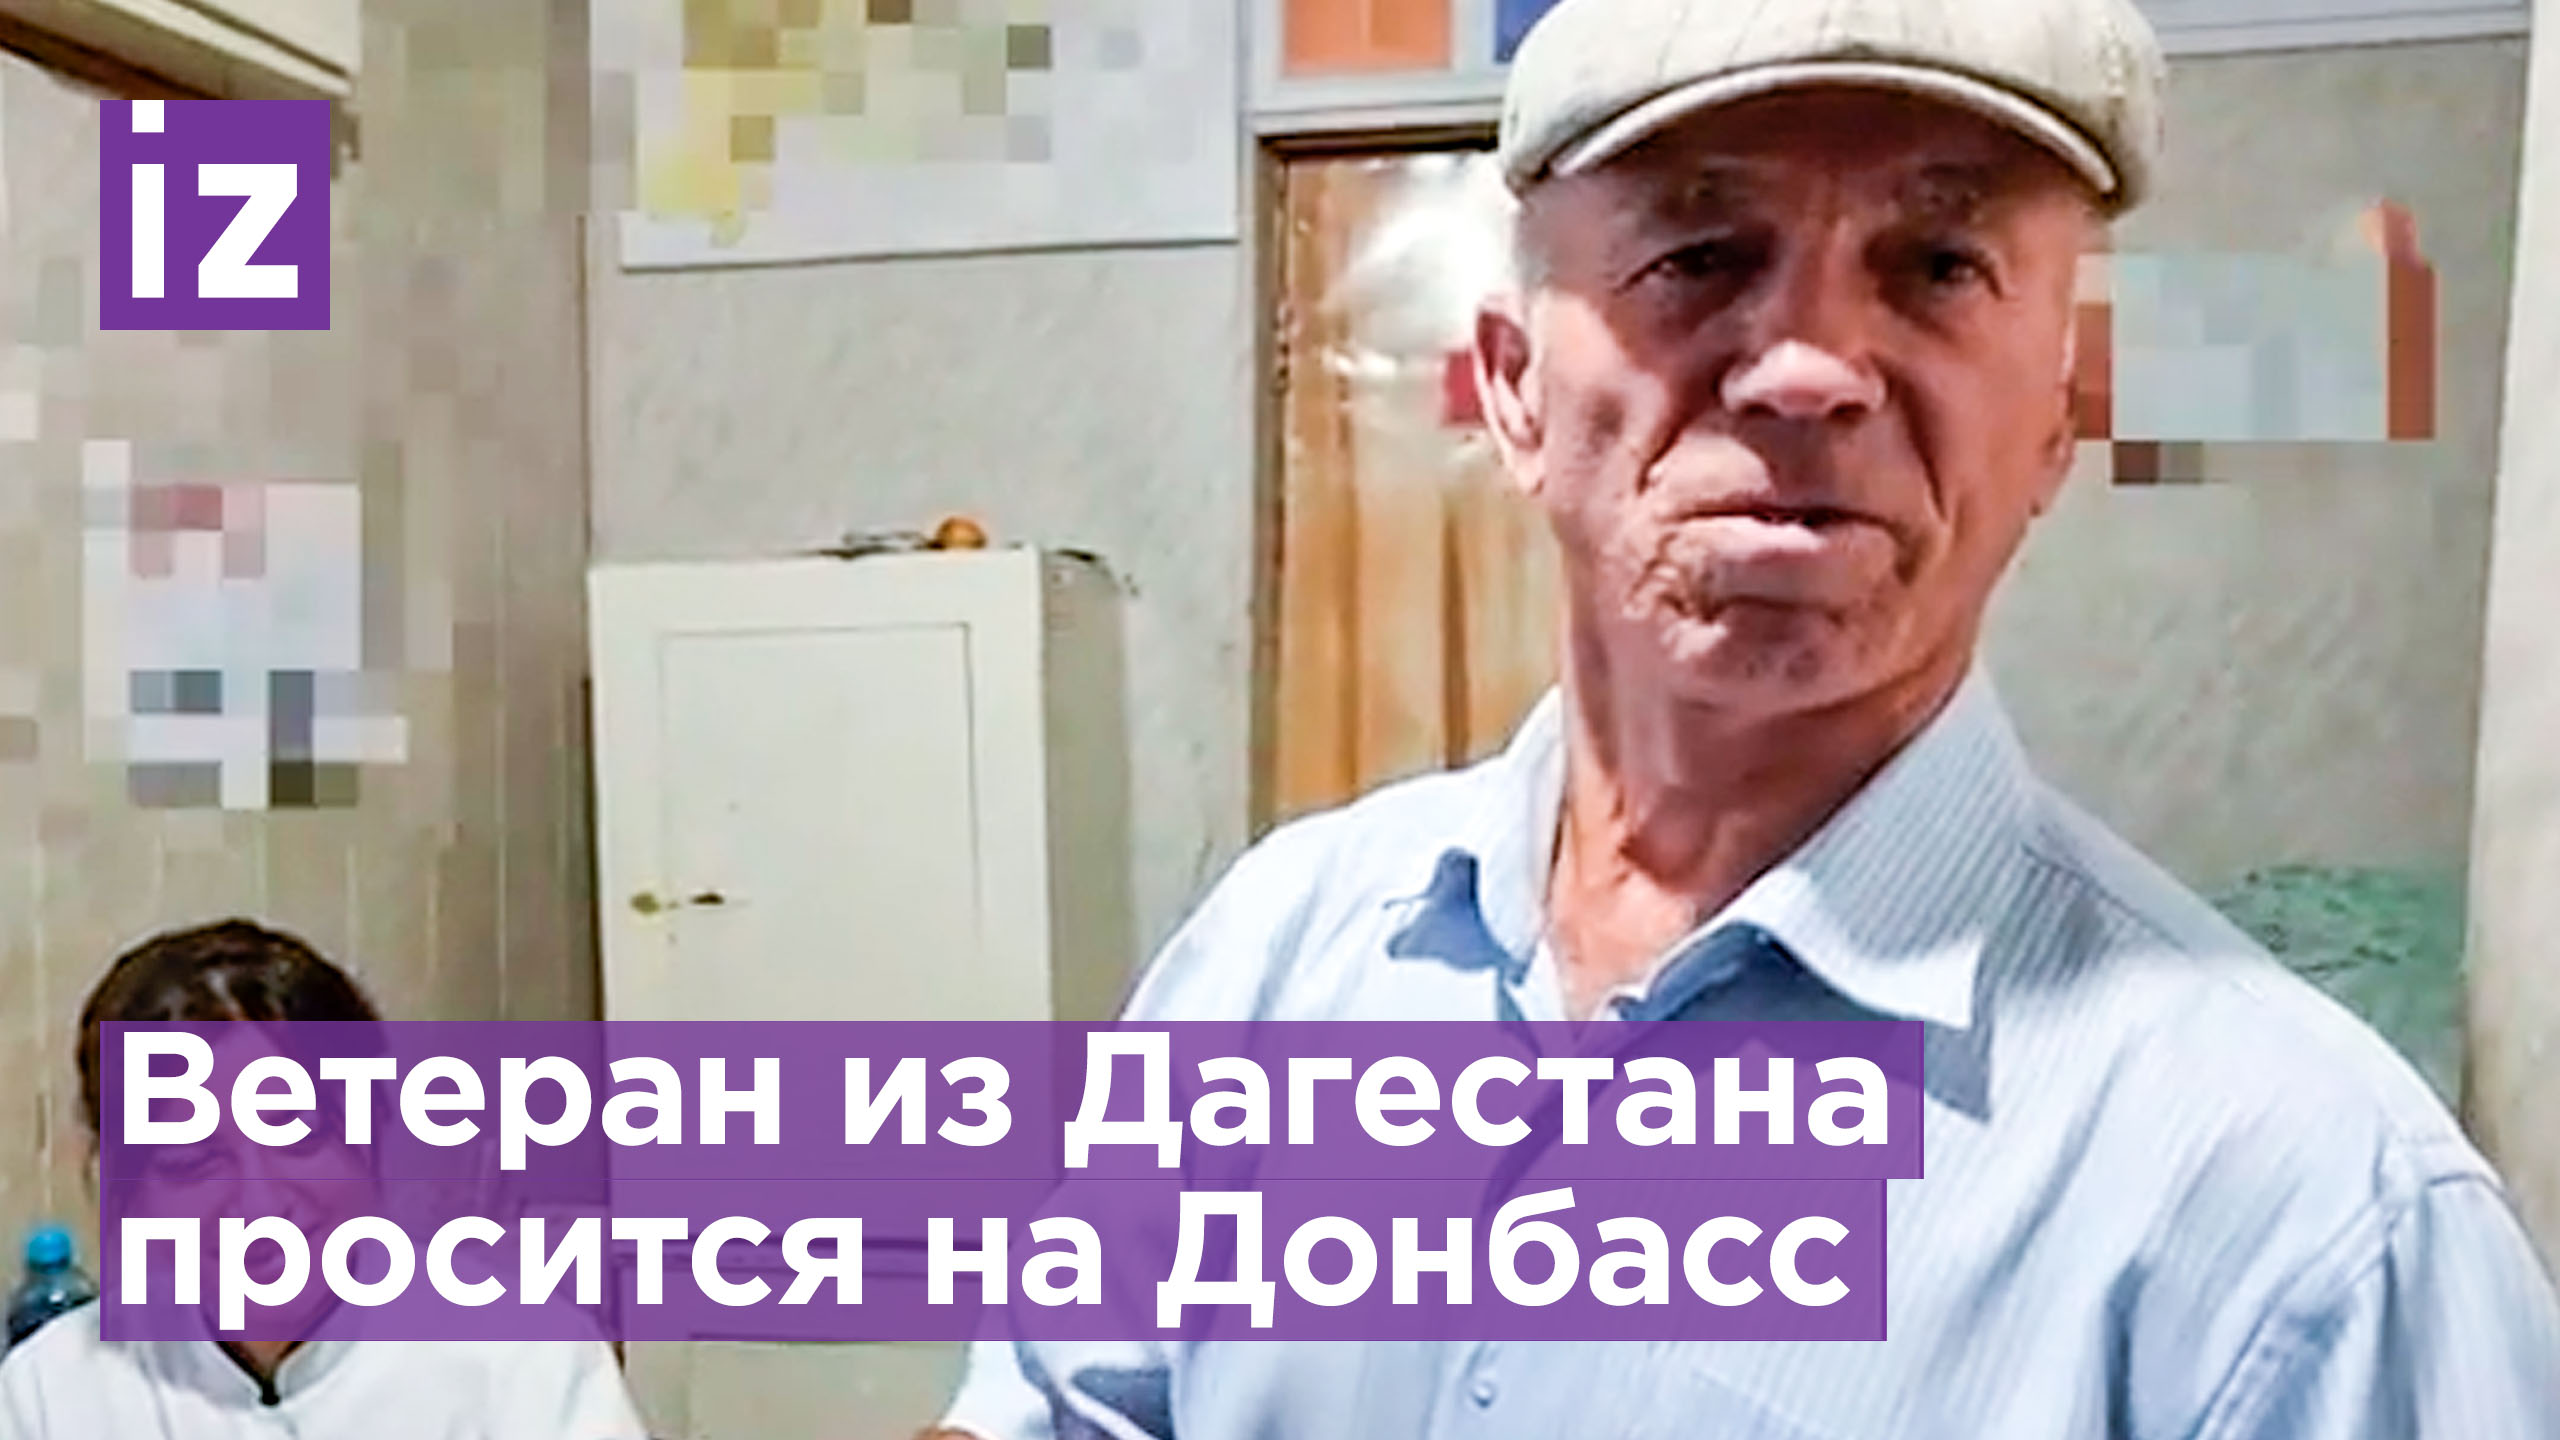 71-летний ветеран из Дагестана захотел принять участие в спецоперации / Известия